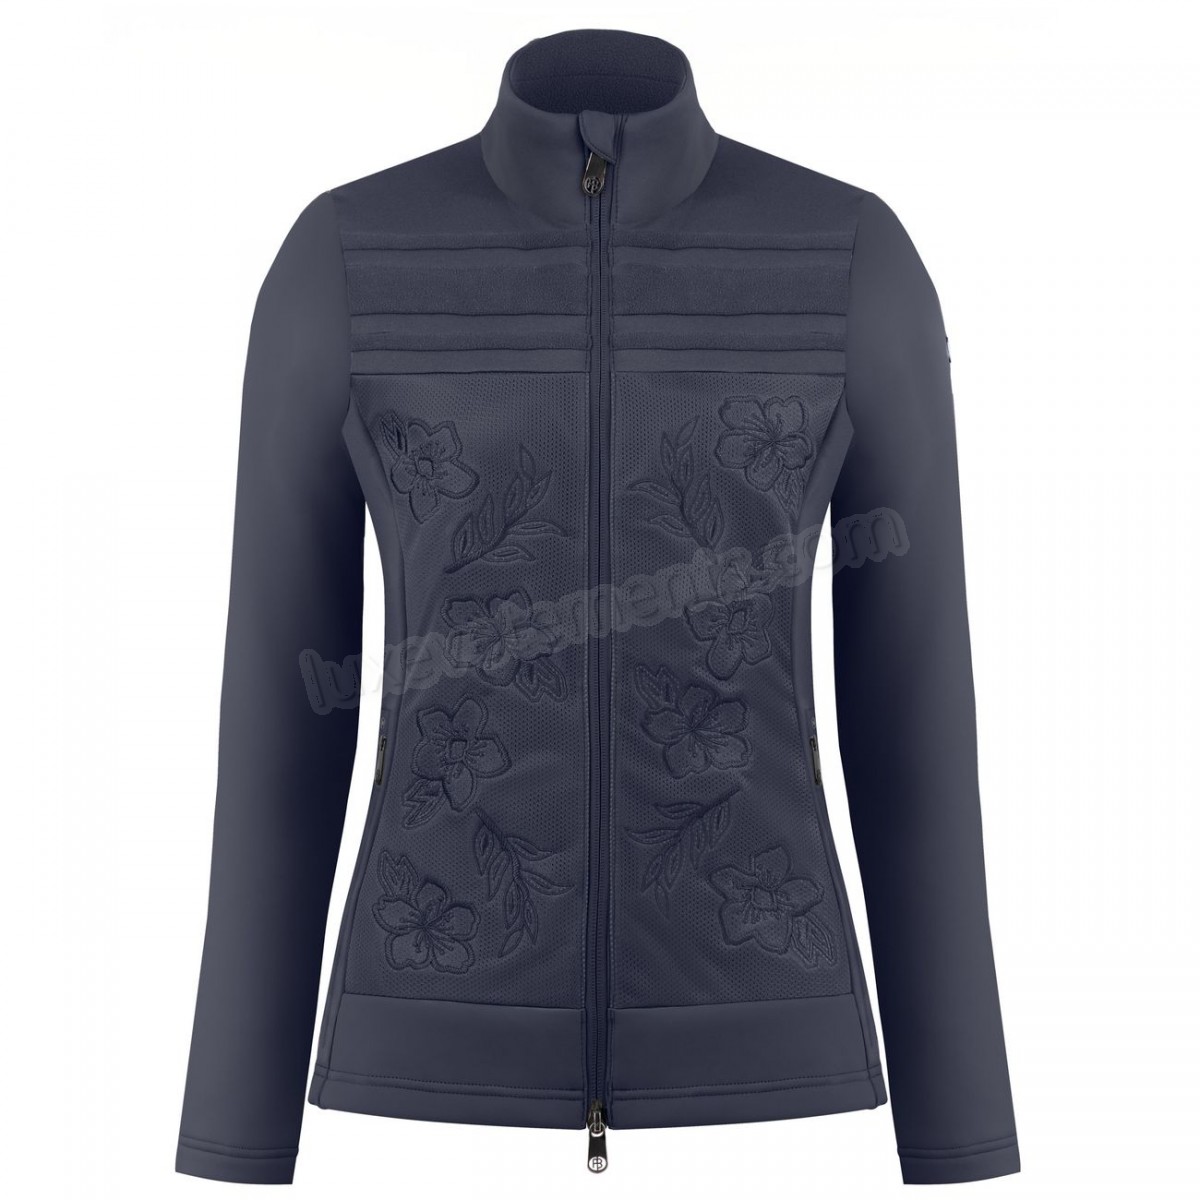 Poivre Blanc-Sports d'hiver femme POIVRE BLANC Veste Polaire Poivre Blanc Hybrid Stretch Fleece Jacket 1605 Gothic Blue 4 Femme Vente en ligne - -1